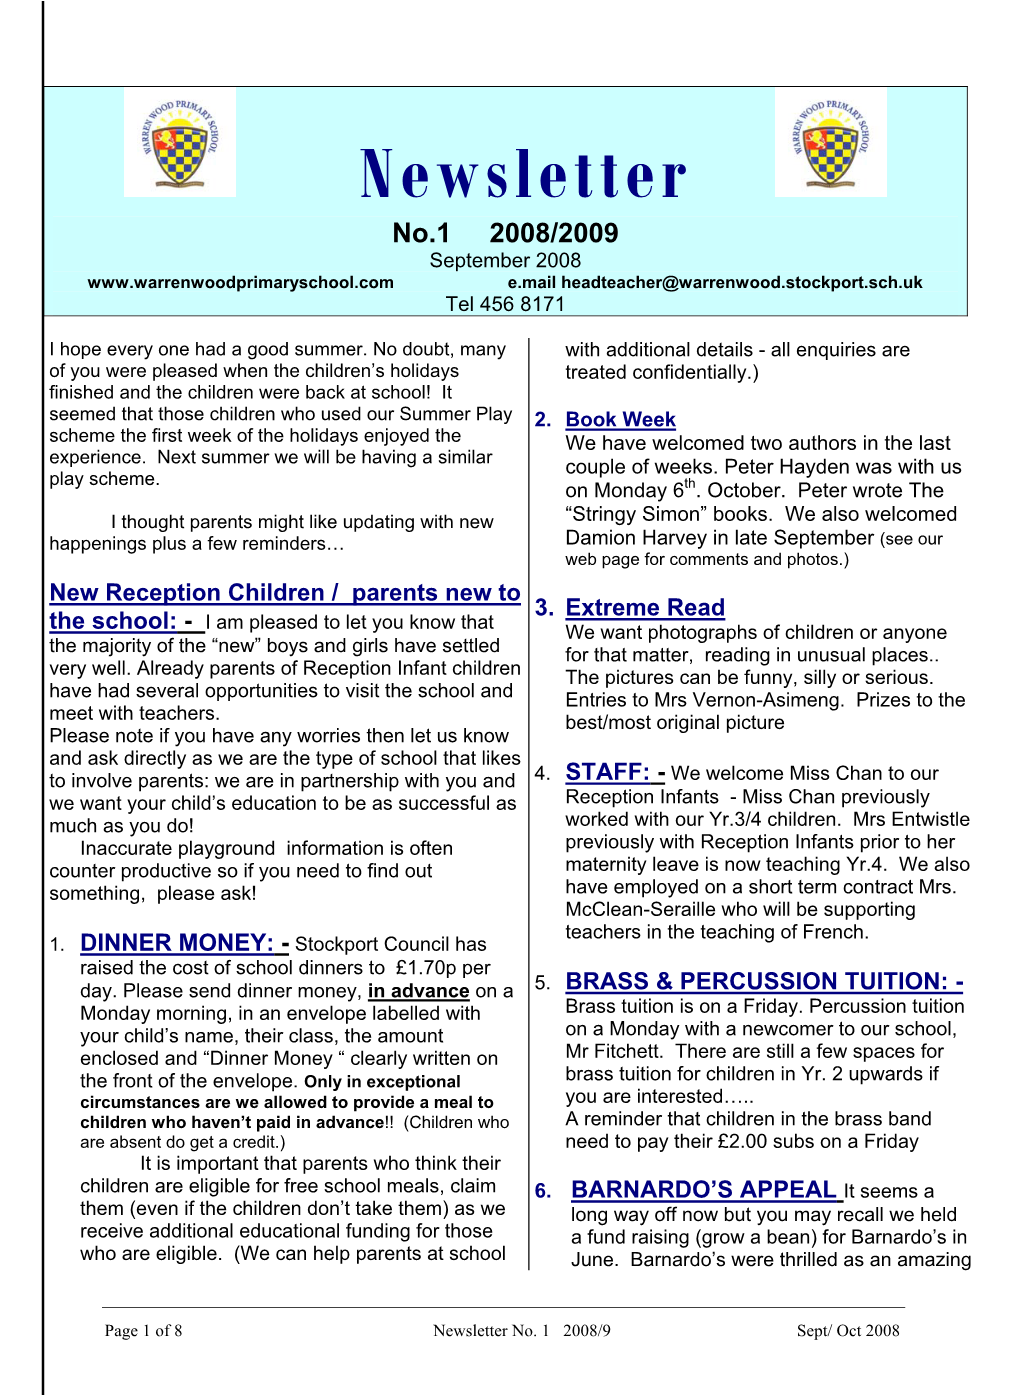 Newsletter No.1 2008/2009 September 2008 E.Mail Headteacher@Warrenwood.Stockport.Sch.Uk Tel 456 8171